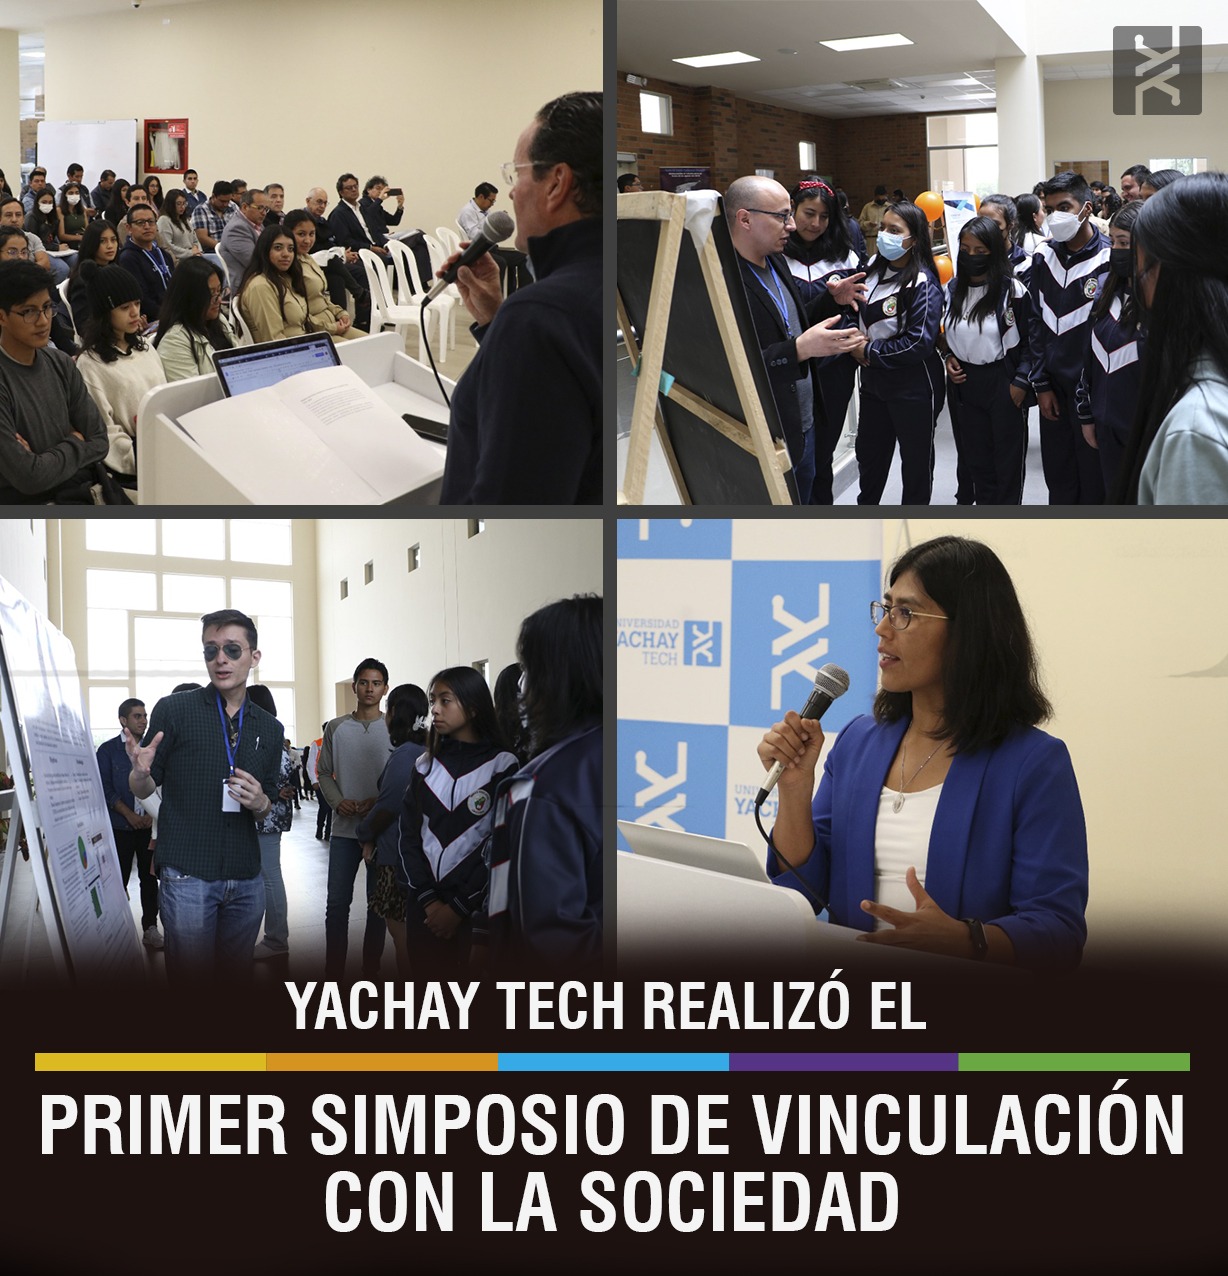 YACHAY TECH REALIZÓ EL PRIMER SIMPOSIO DE VINCULACIÓN CON LA SOCIEDAD